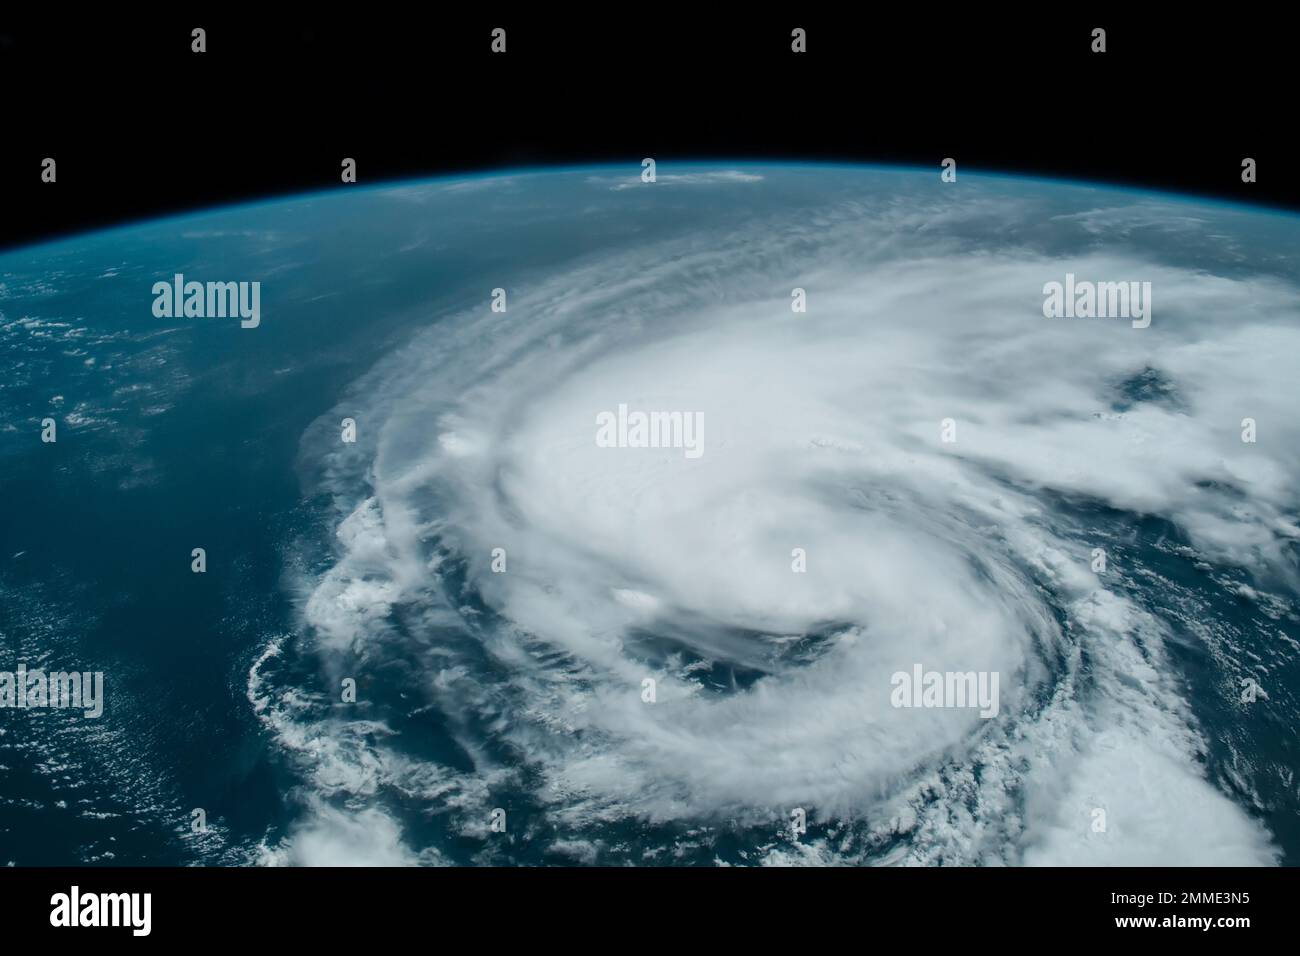 Hurrikan aus dem All, Satellitenblick. Hurrikan-Katastrophe. Elemente dieses Bildes, bereitgestellt von der NASA. Selektiver Fokus. Einschließlich Lärm und Körnung Stockfoto